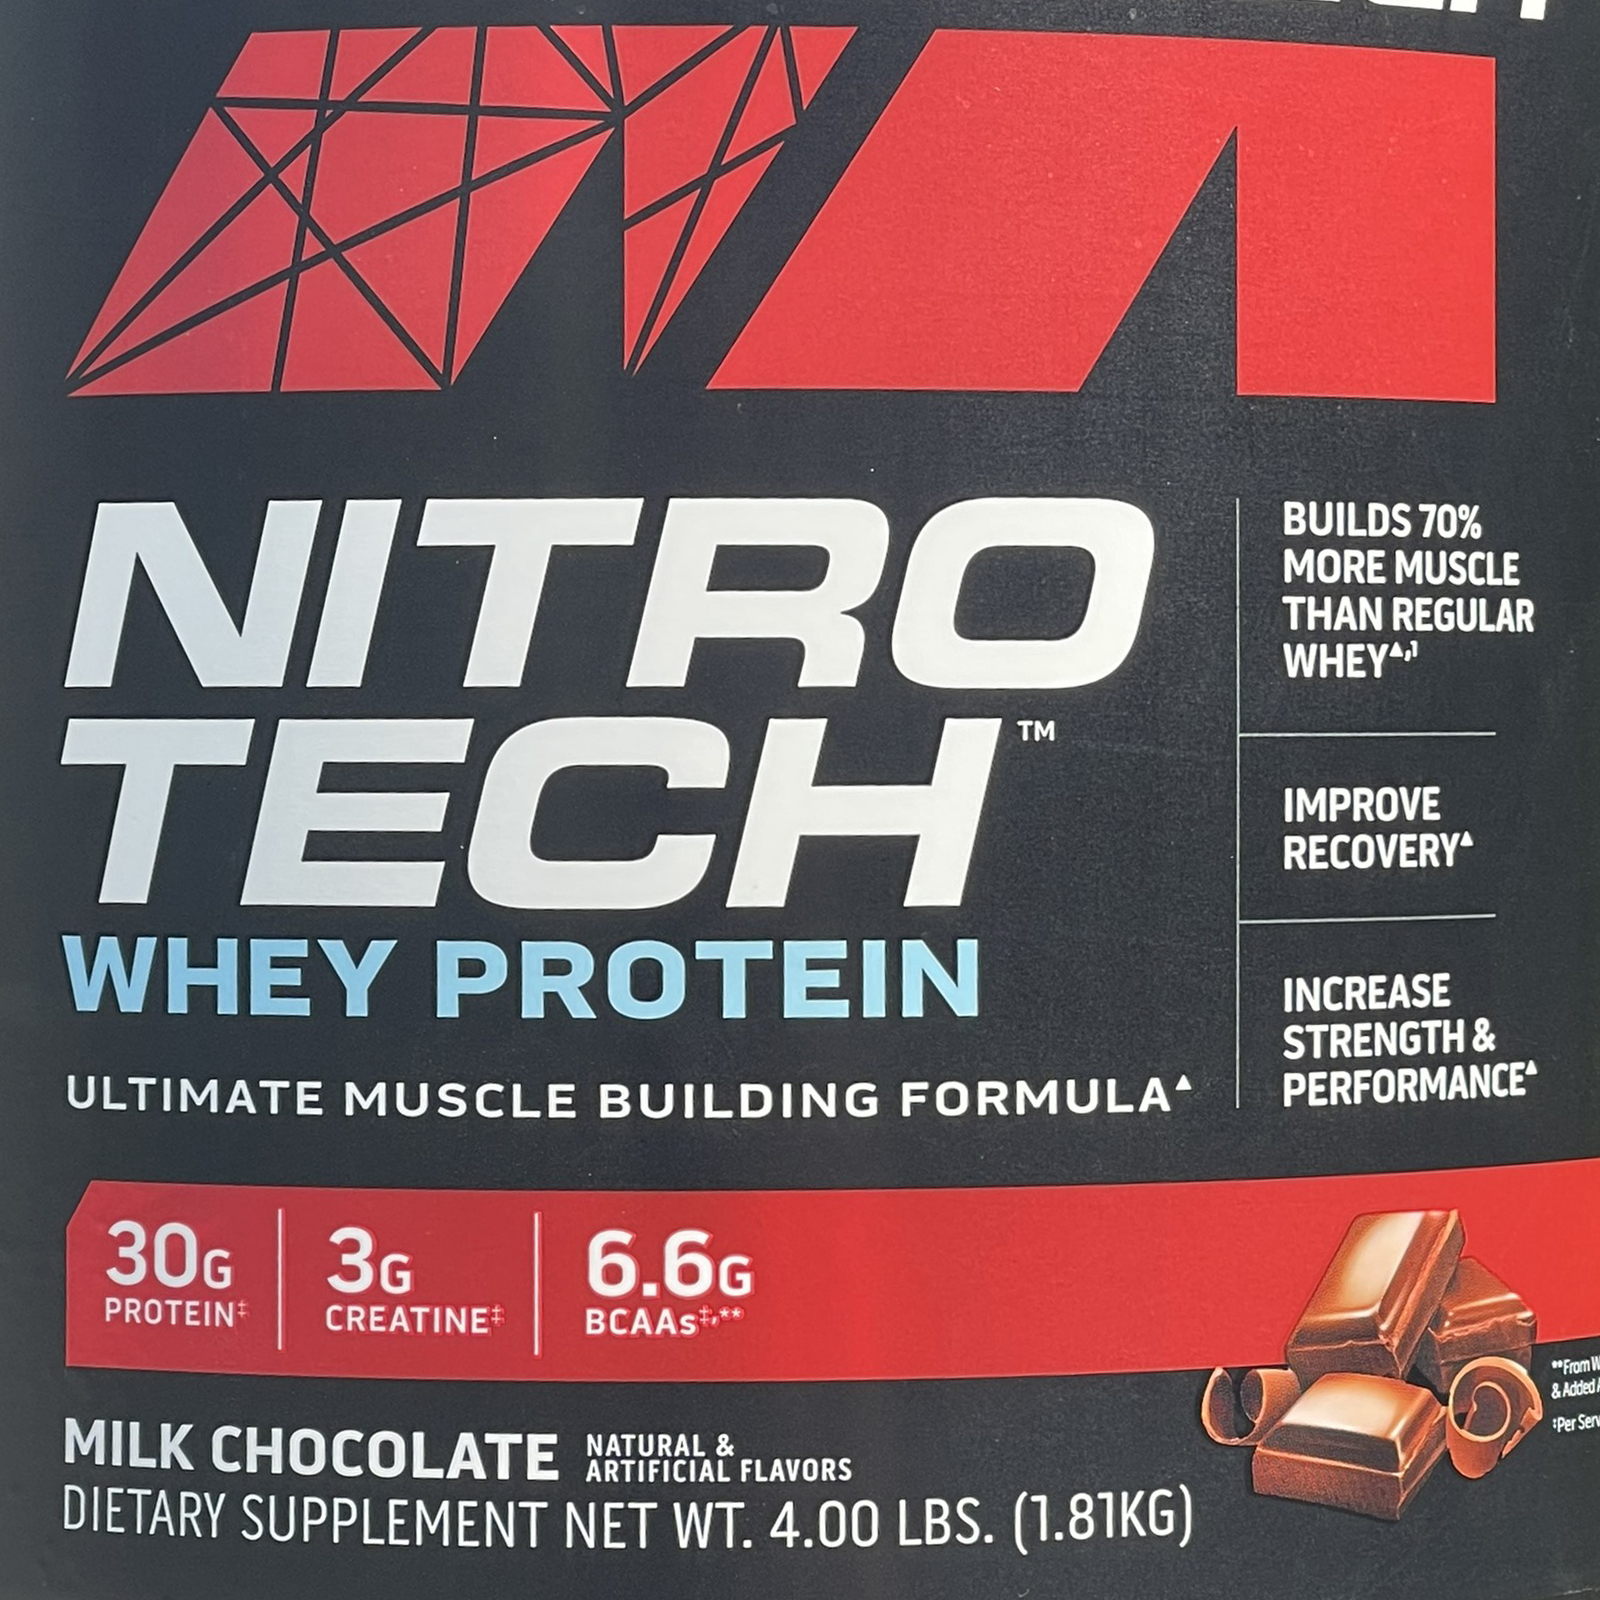 Combo Sữa tăng cơ cao cấp Whey Protein Nitro Tech của MuscleTech hộp 4 LBS hỗ trợ tăng cơ, giảm cân, đốt mỡ cho người tập GYM & Bình lắc 600 ml (Màu Ngẫu Nhiên)